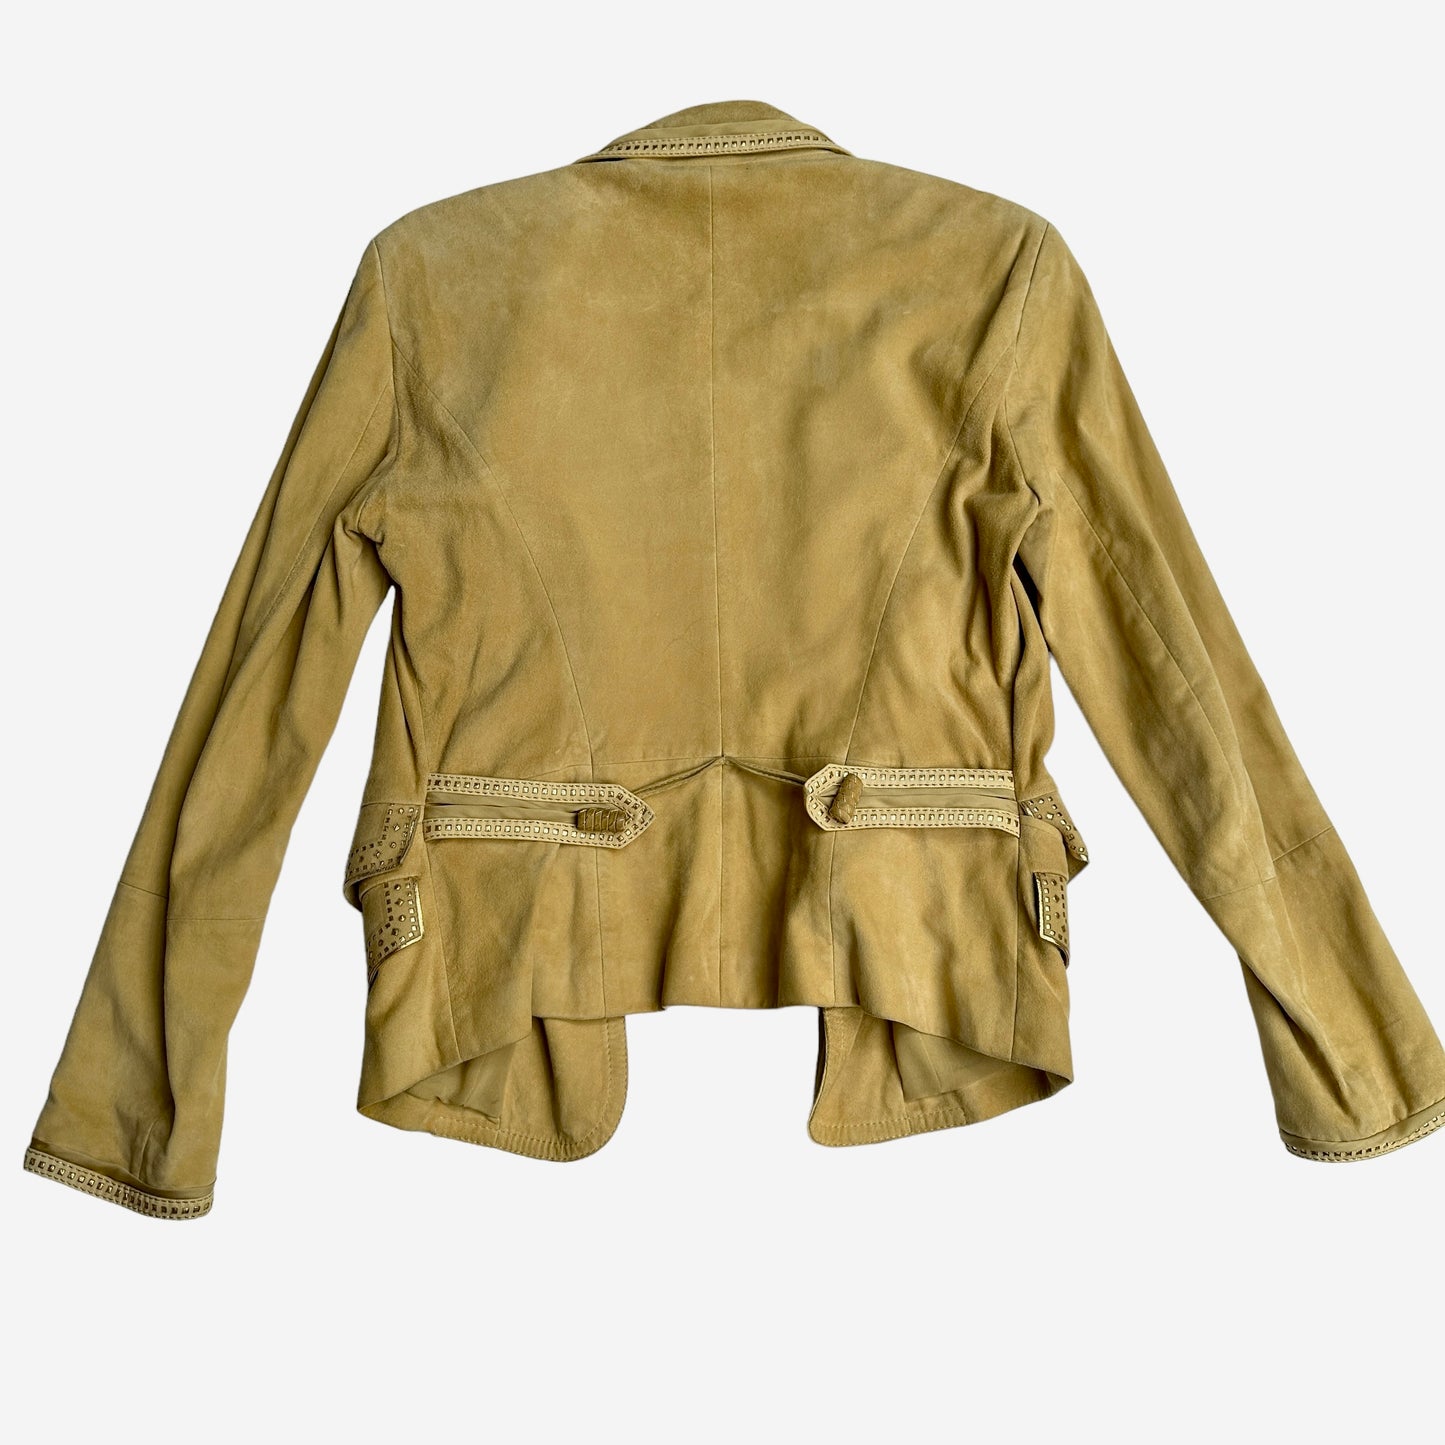 Vintage Suede Leather Jacket - L